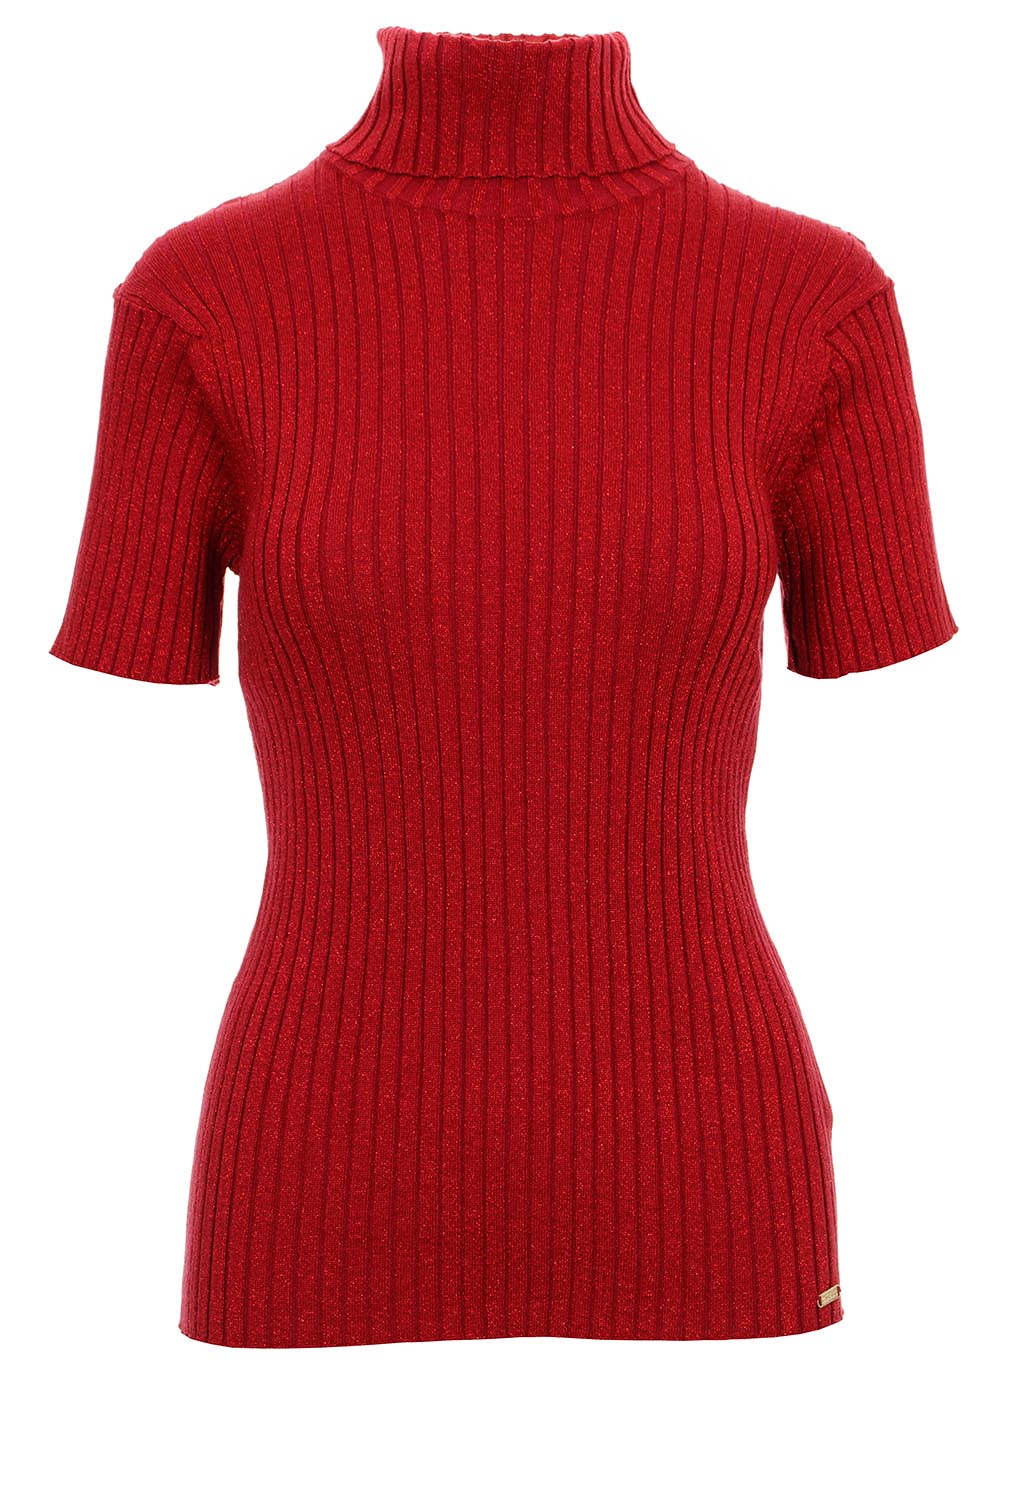 Guess dámské úpletové tričko s rolákem Jolene vínově červené Velikost: XL